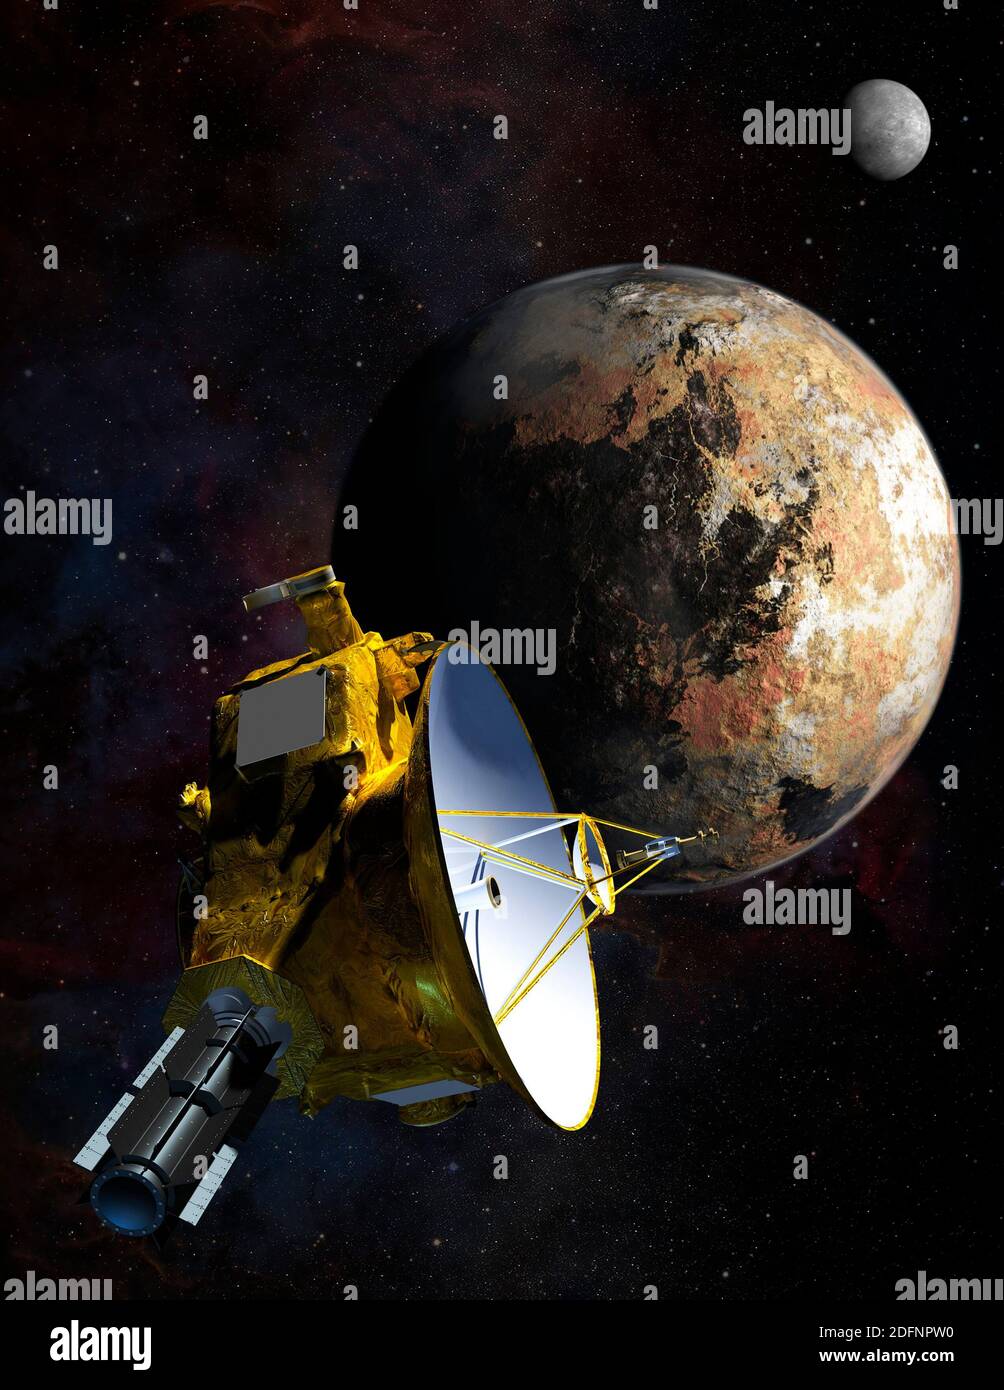 PLUTÓN, SISTEMA sol - 13 Julio 2015 - la impresión de este artista del objeto sub-planetario Plutón fue tomada cuando la sonda espacial se acercó al pequeño planeta Foto de stock